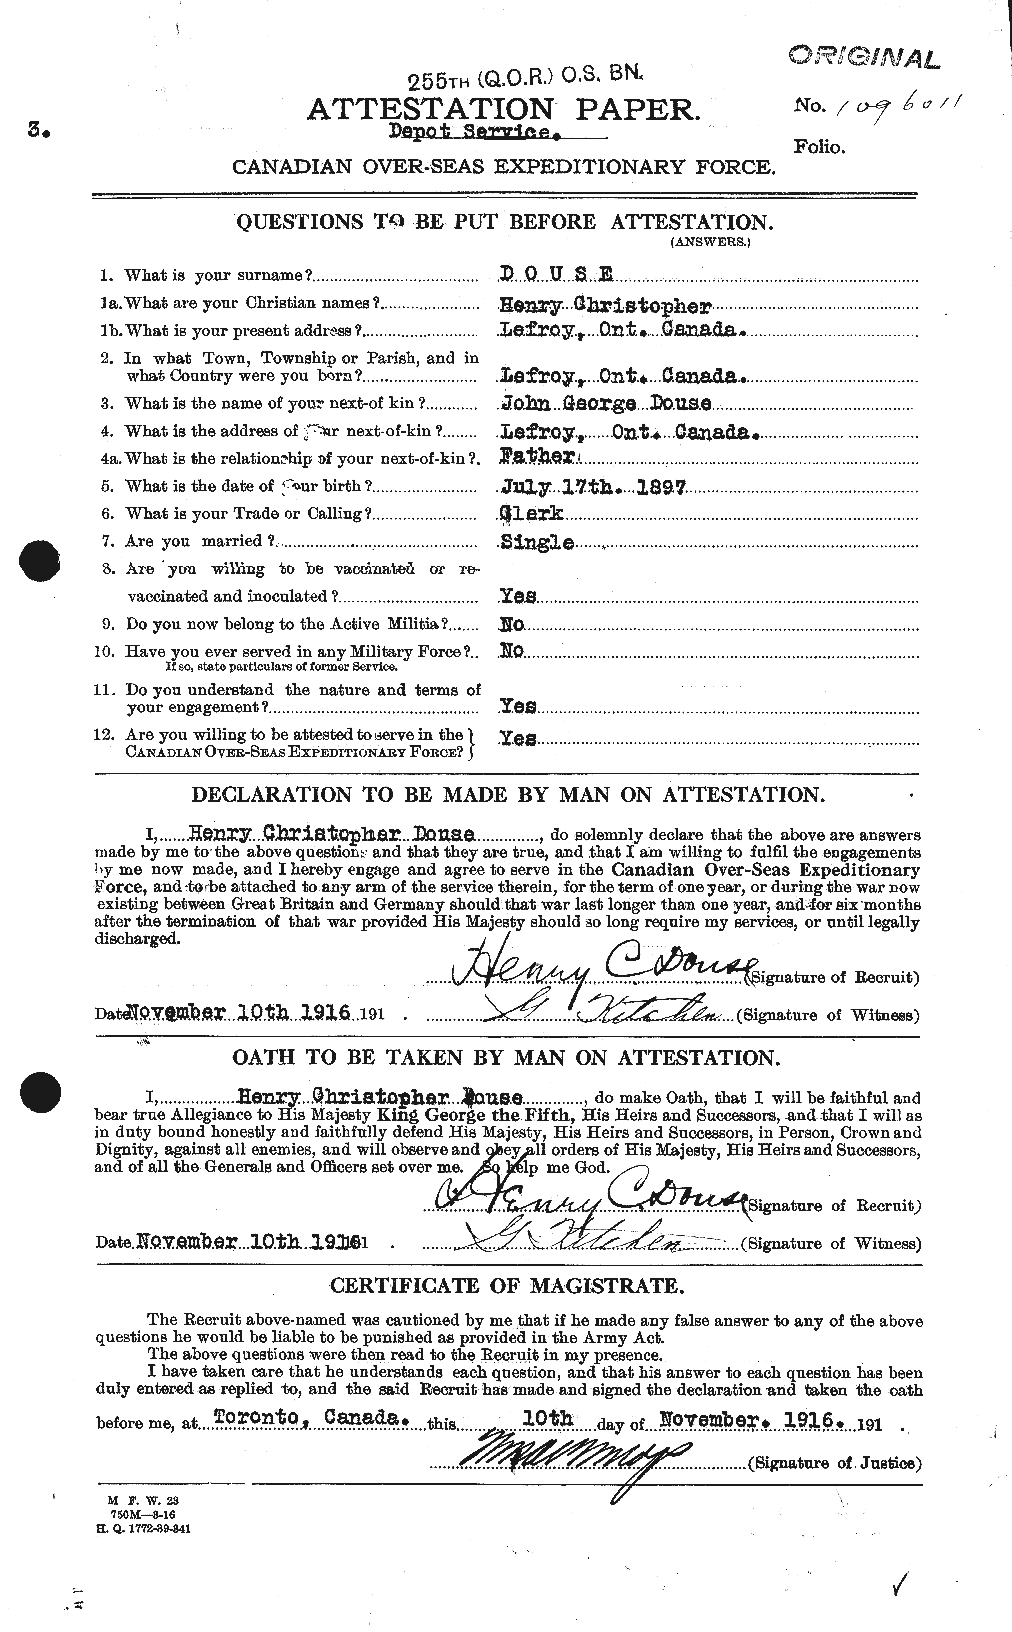 Dossiers du Personnel de la Première Guerre mondiale - CEC 296894a